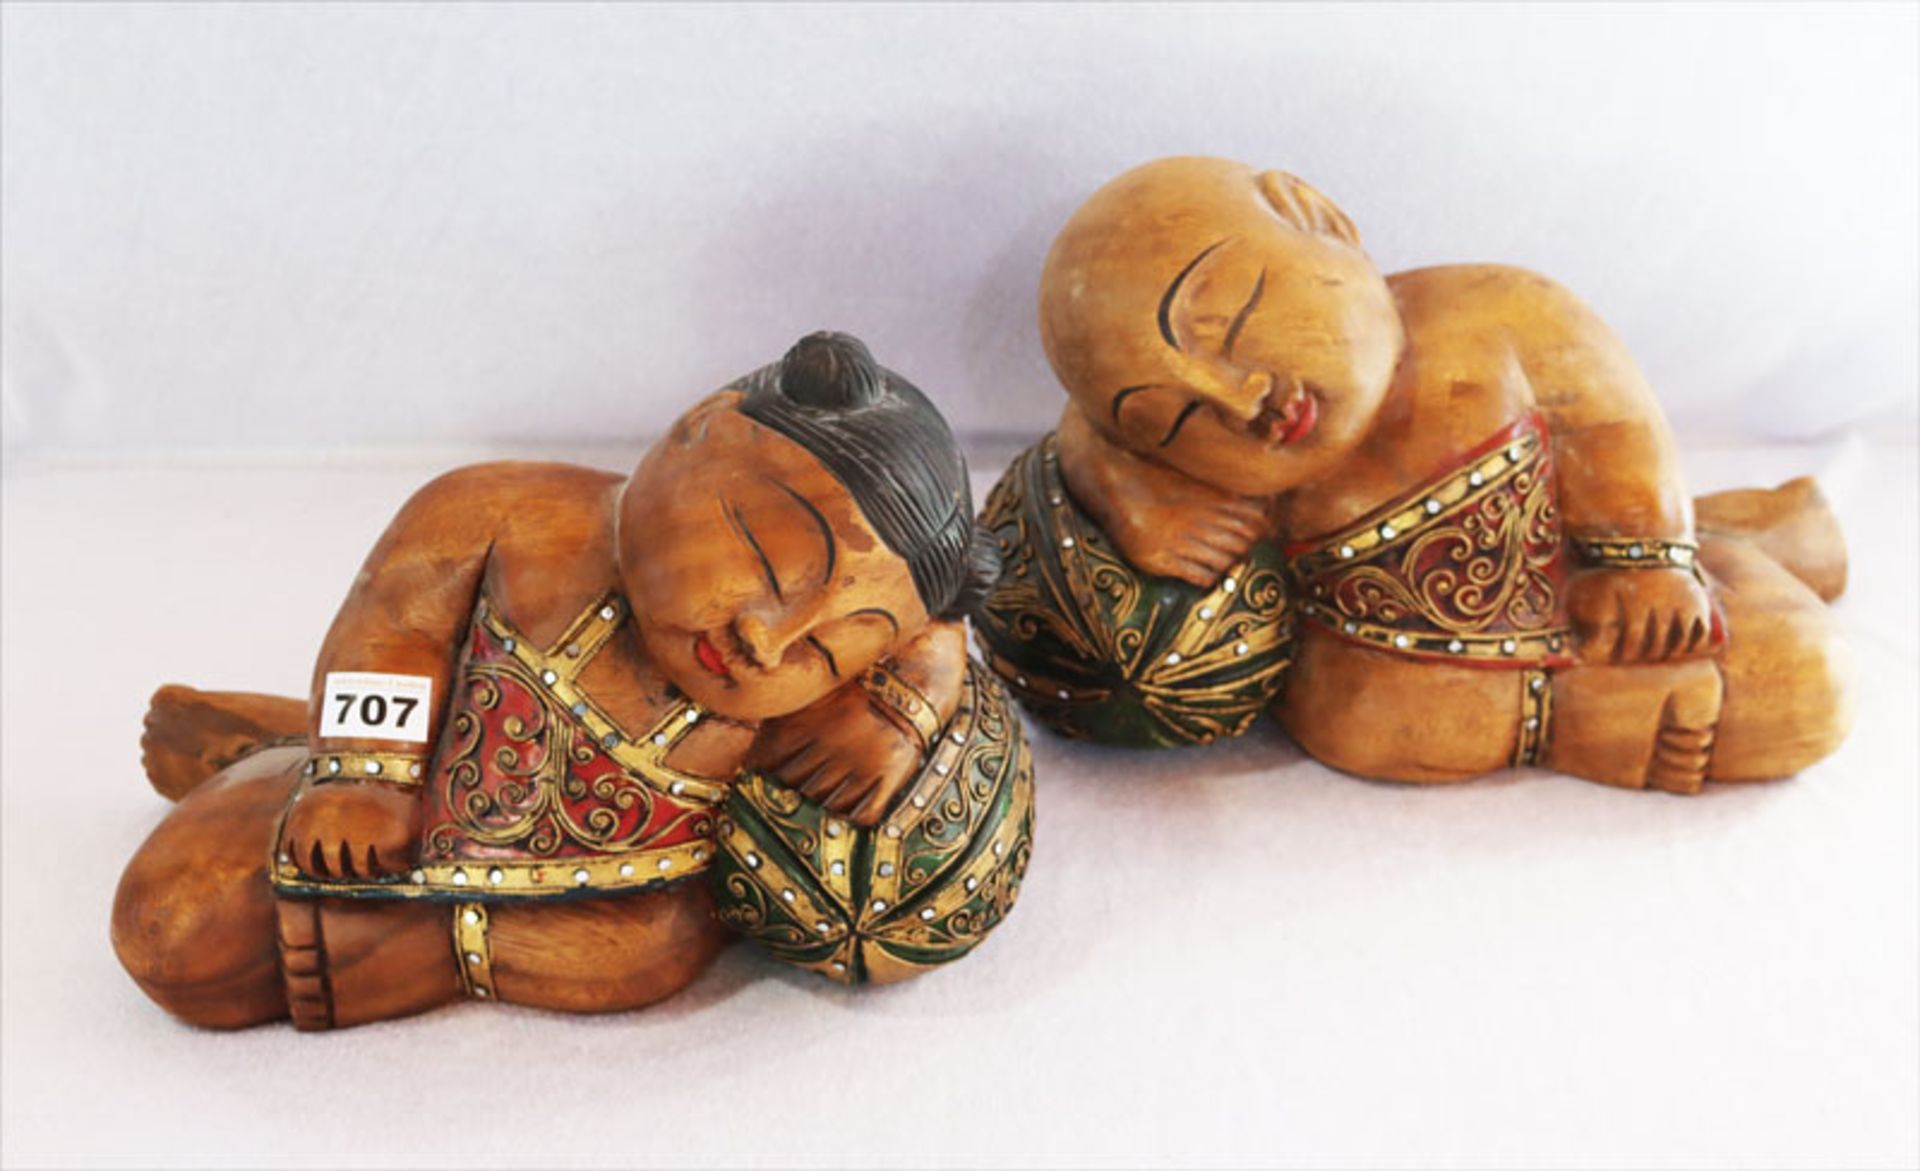 2 asiatische Holzfiguren 'Chinesische schlafende Kinder auf Wassermelone', Glücksbringer, bemalt und